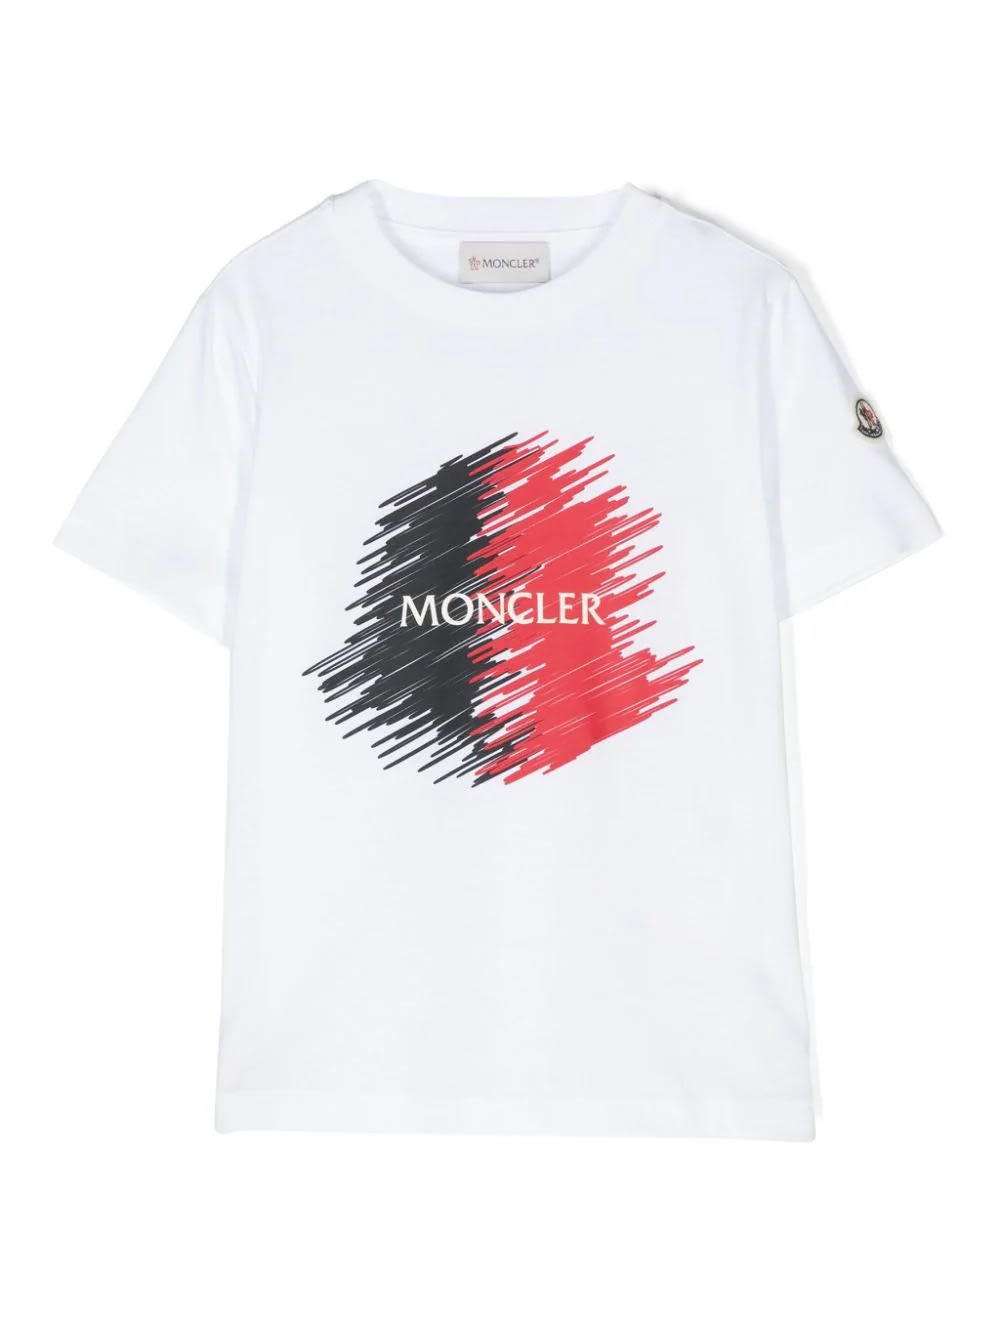 Moncler Kids' White T-shirt With Logo Motif